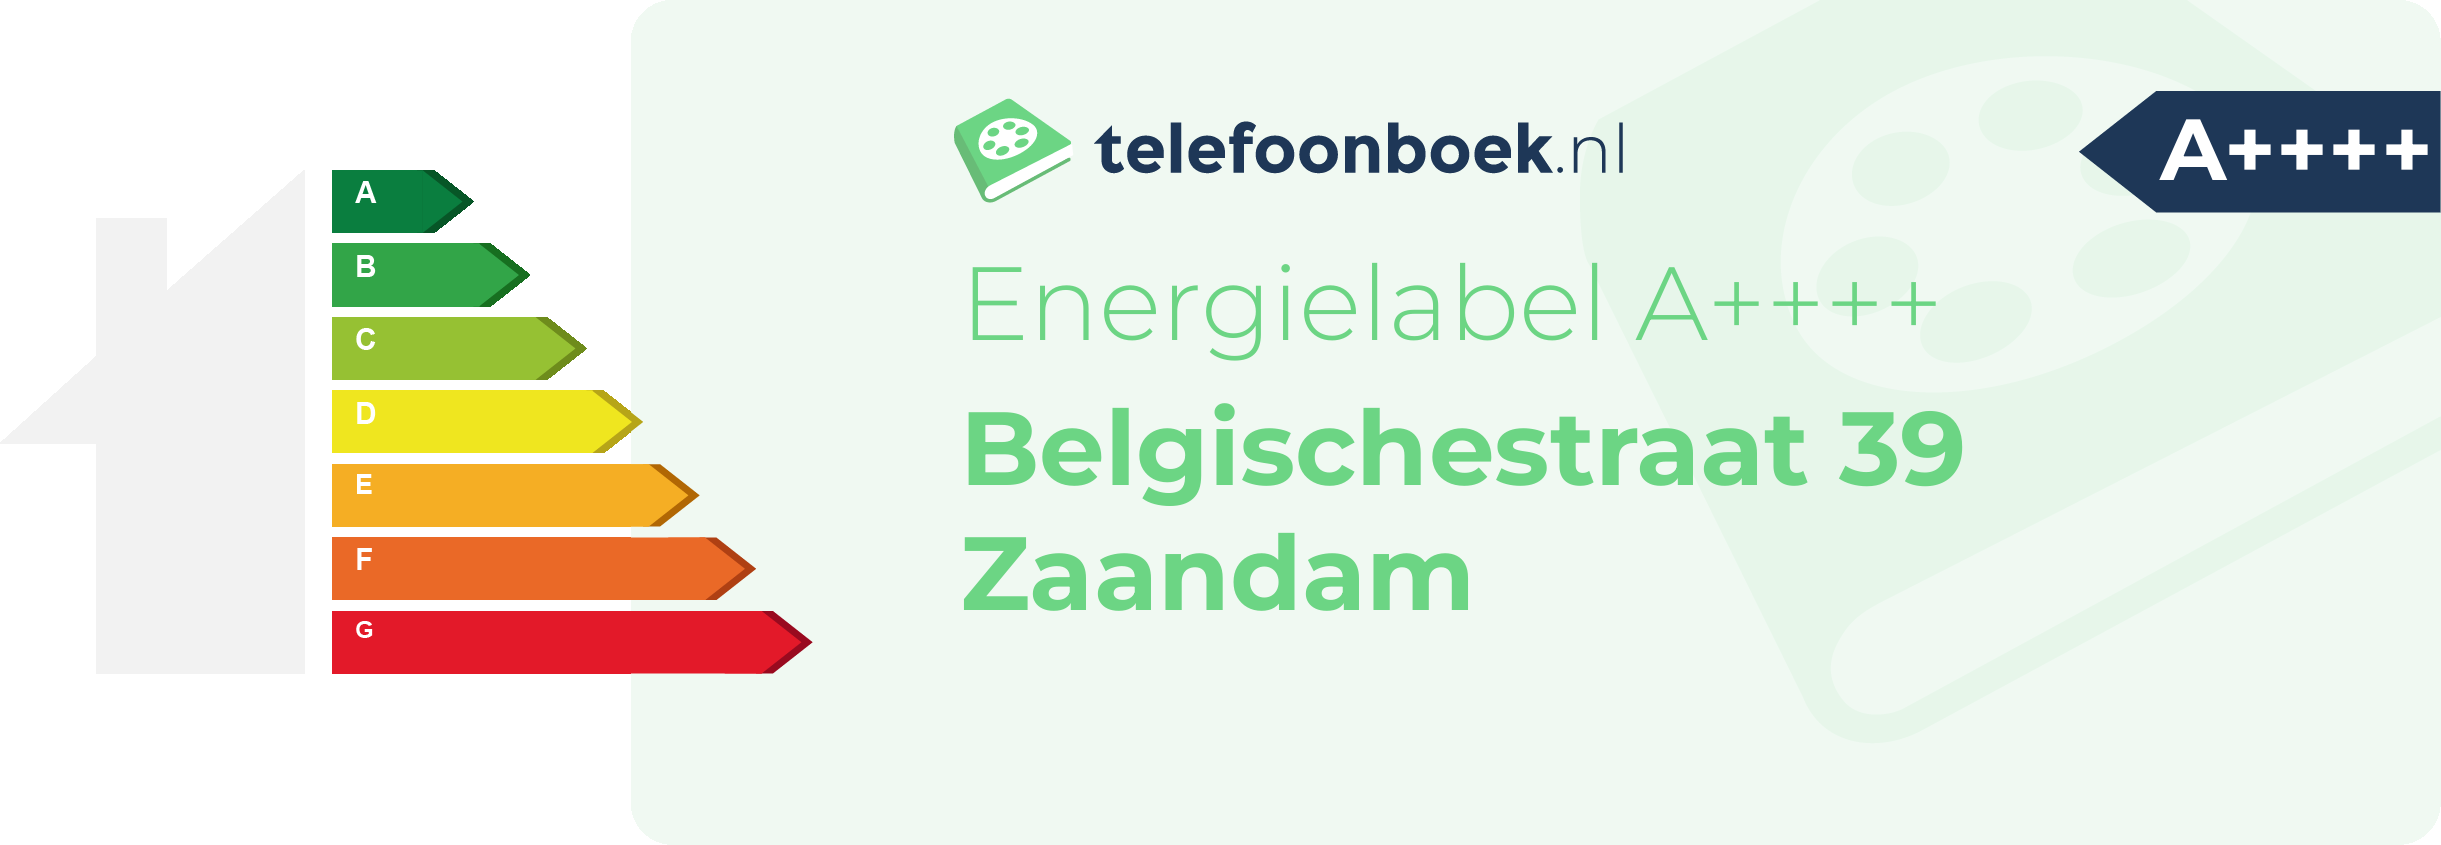 Energielabel Belgischestraat 39 Zaandam